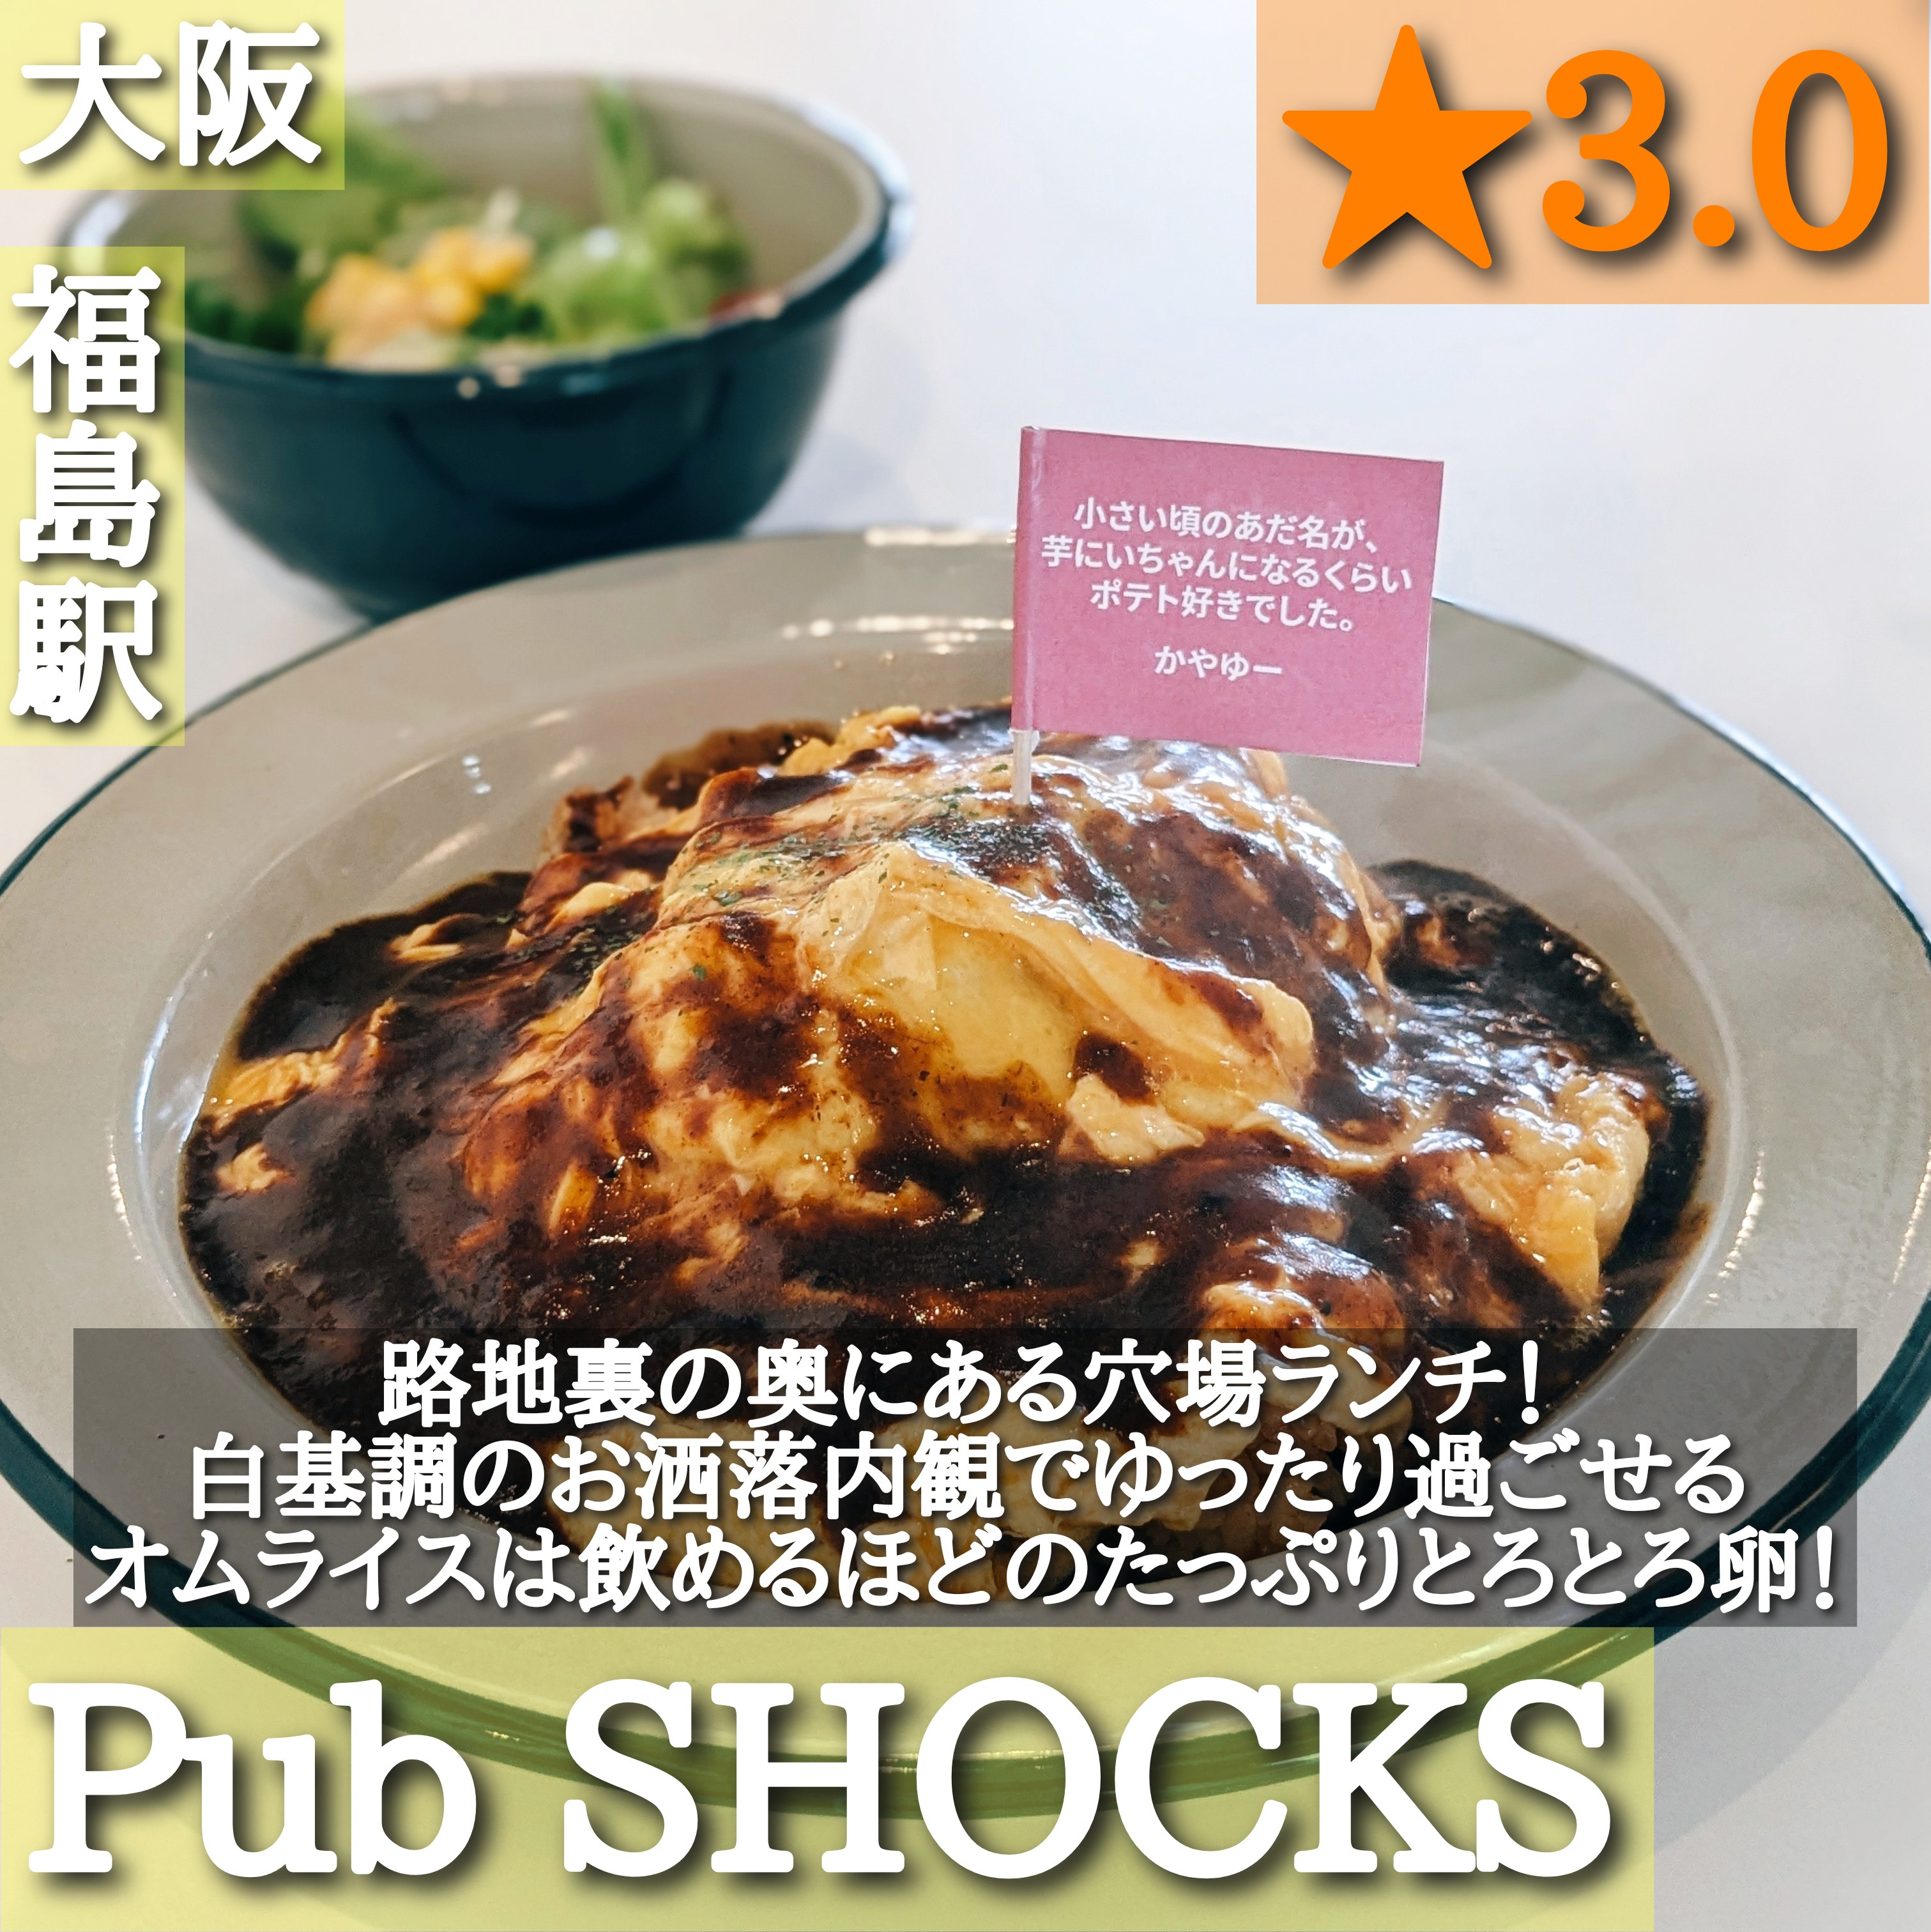 Pub SHOCKS(福島駅)